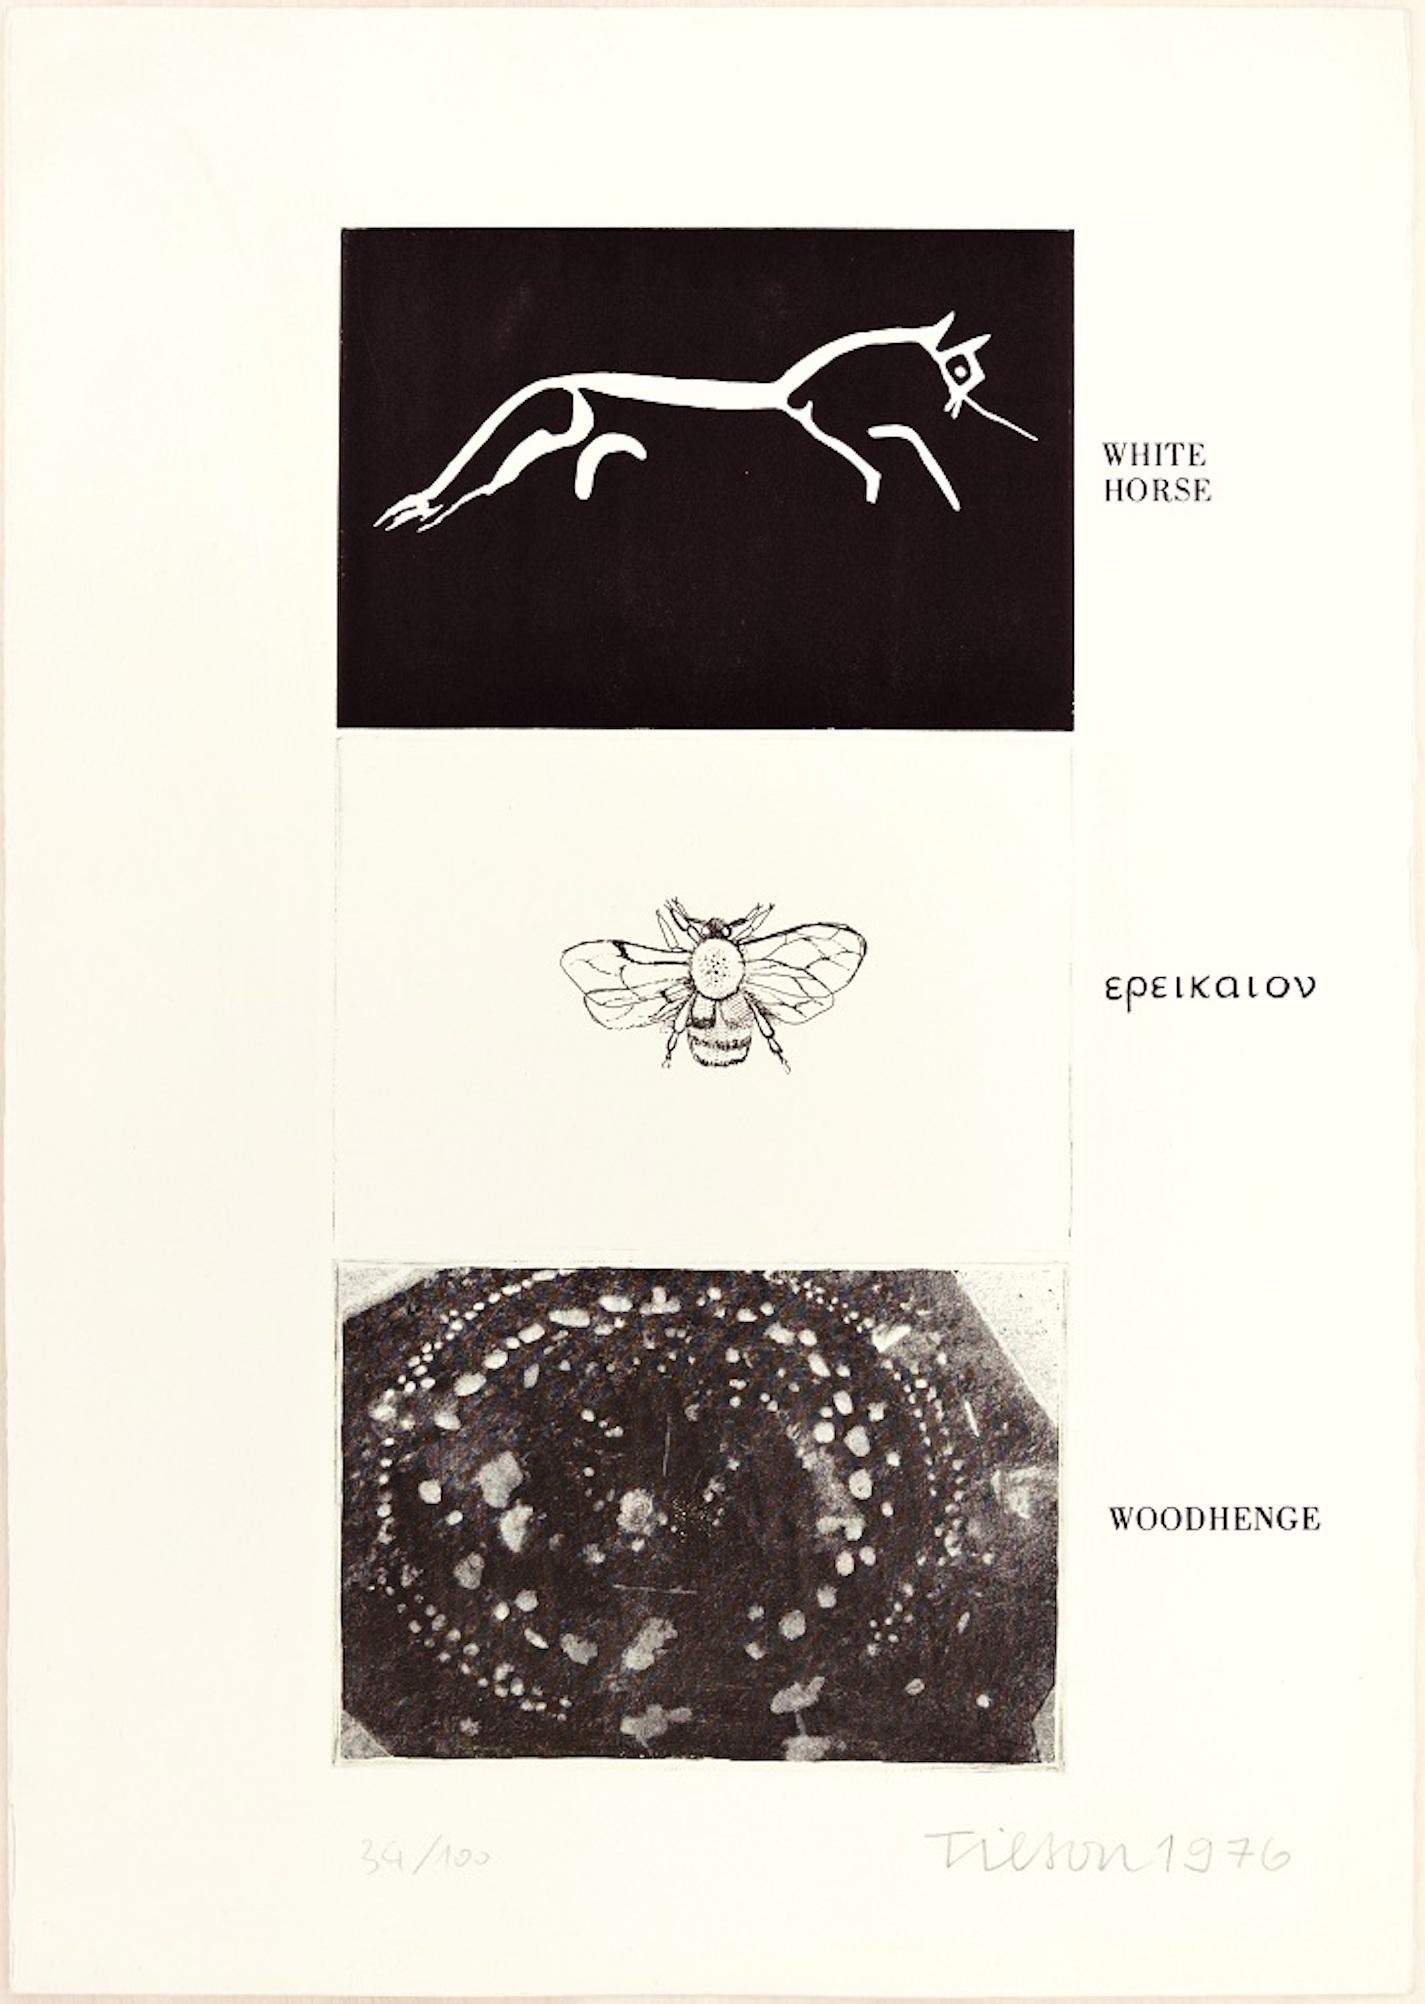 White Horse, Woodhenge est une gravure en noir et blanc sur papier rosaspina Fabriano filigrané, réalisée en 1976 par l'artiste pop anglais, Joe Tilson.

Signé à la main, daté et numéroté au crayon dans la marge inférieure. Edition de 100 tirages.